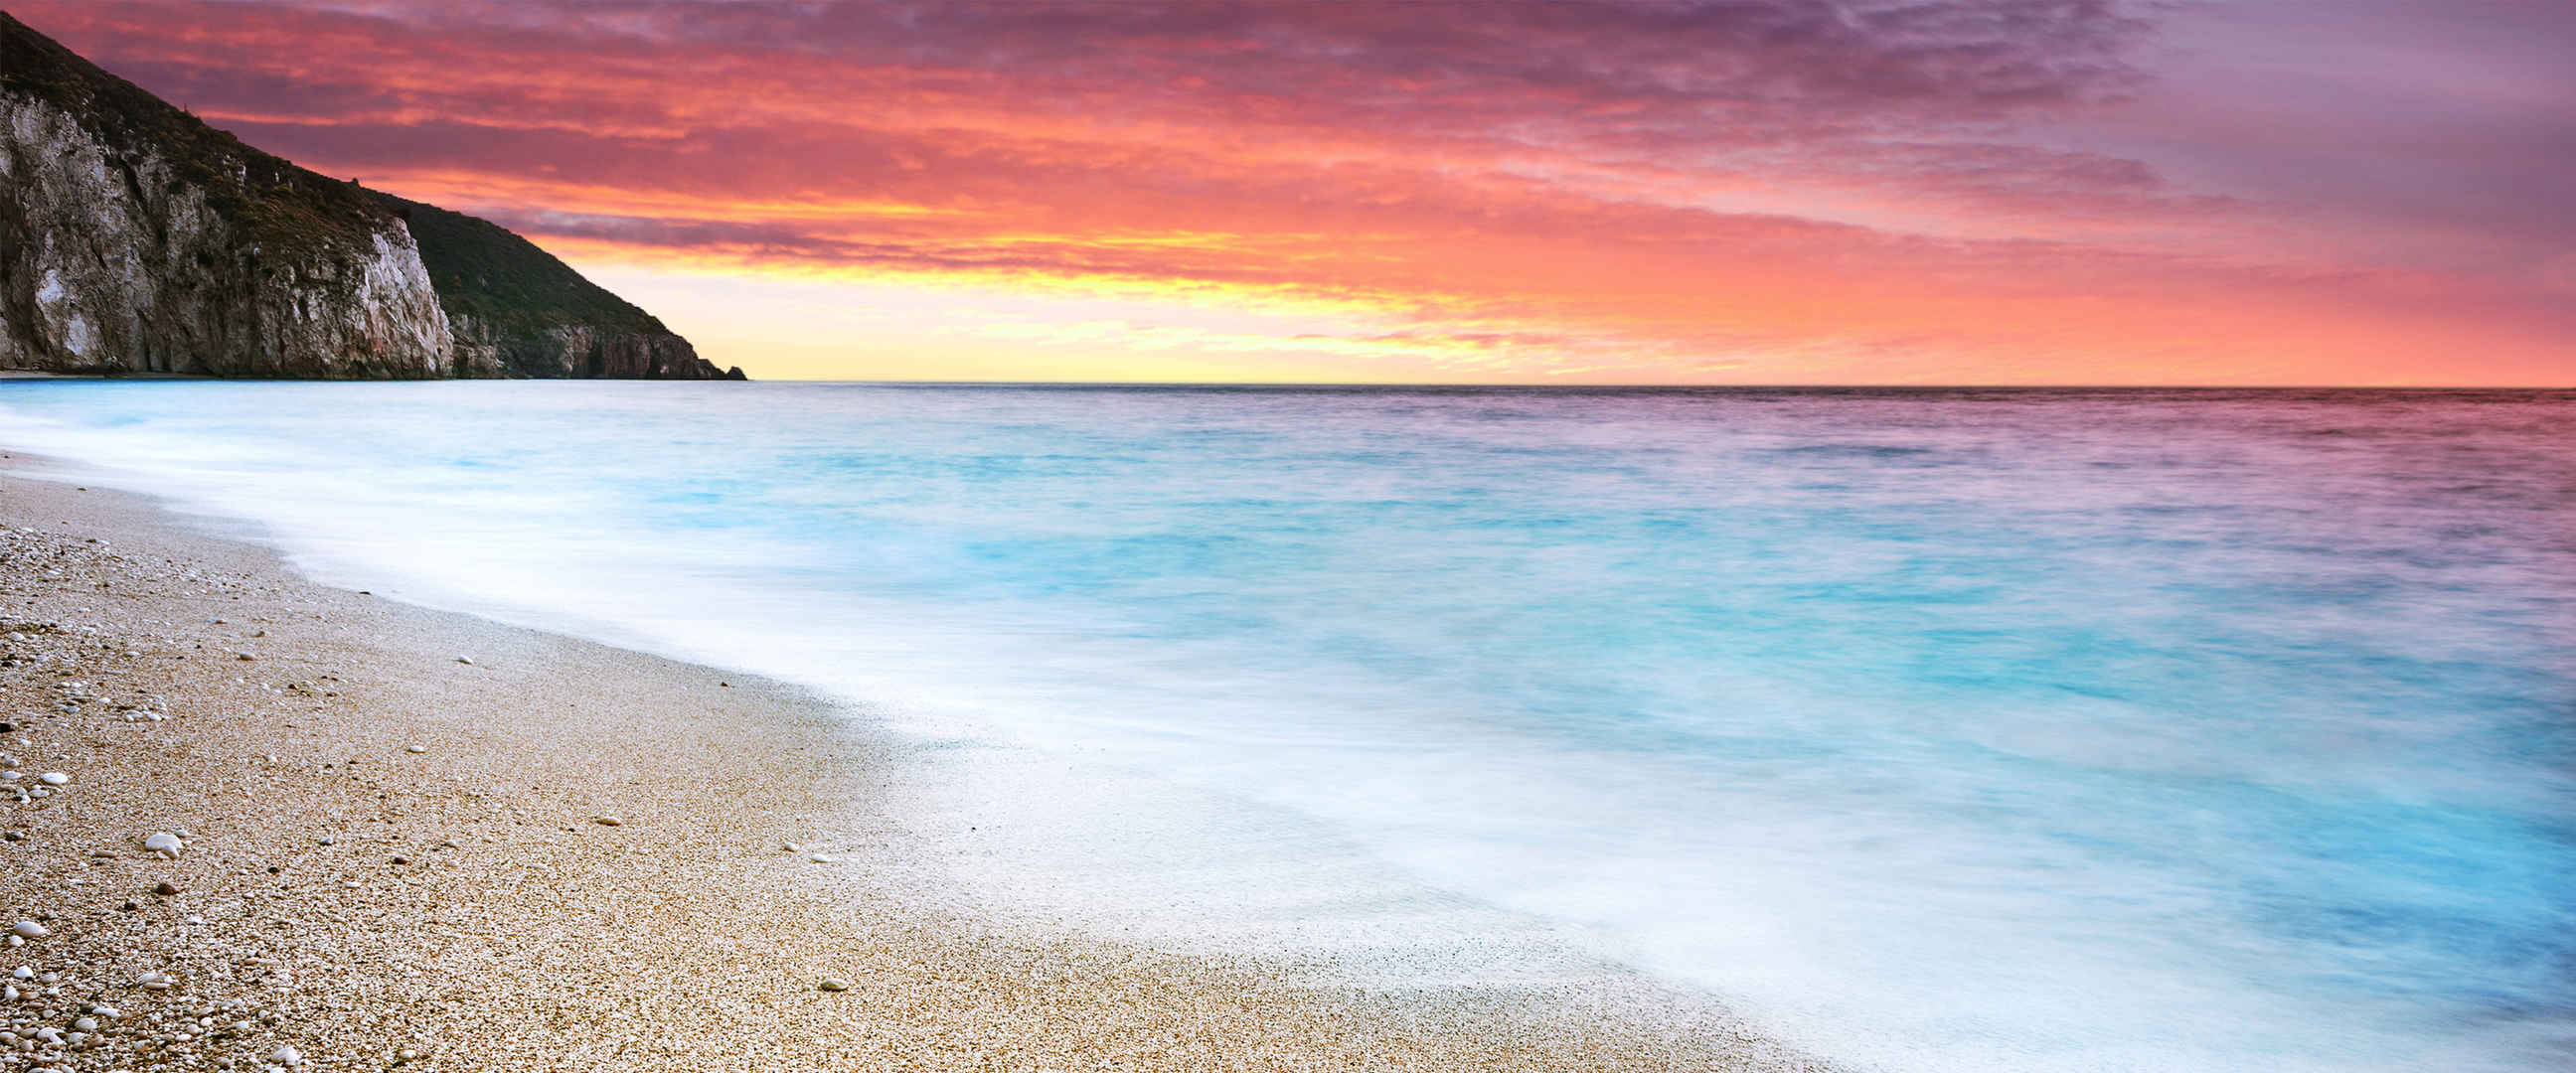 红霞 蓝色海水 沙滩 图片